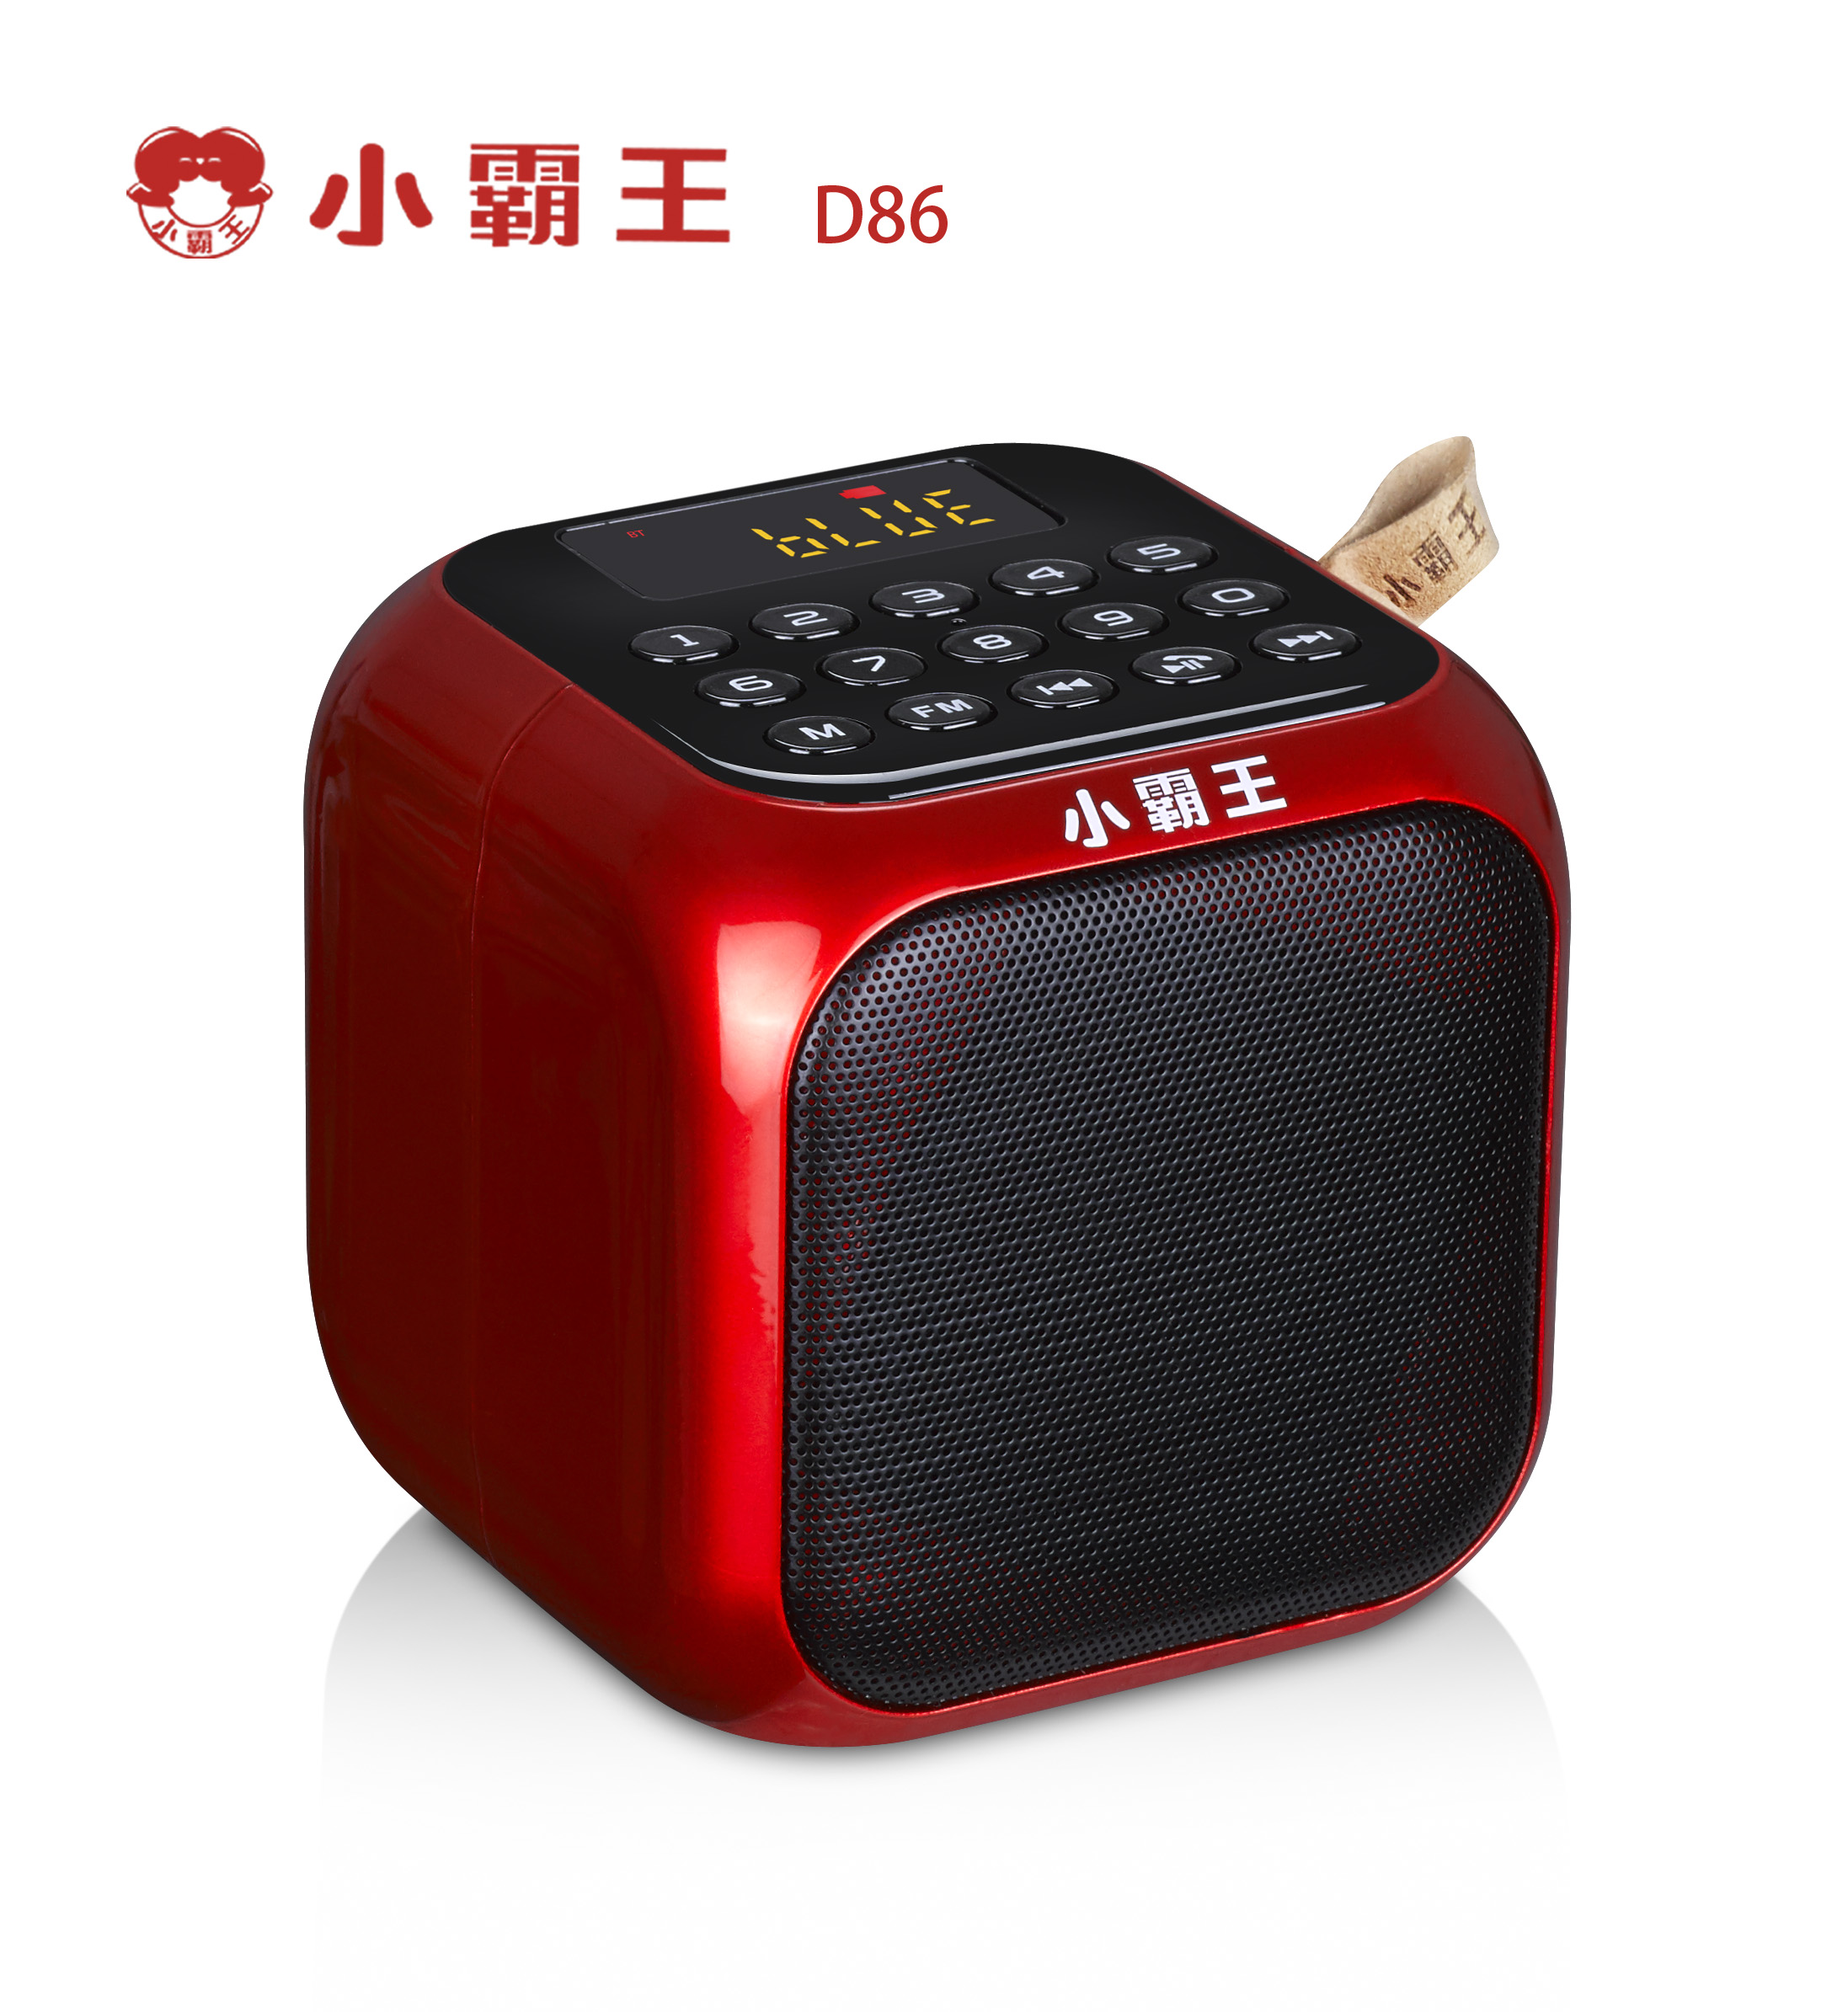 小霸王D86无线蓝牙音箱、数字选曲、UV烤漆重低音、智能语音提示、小巧便捷式蓝牙音箱、可插卡/U盘低音炮、带FM收音、